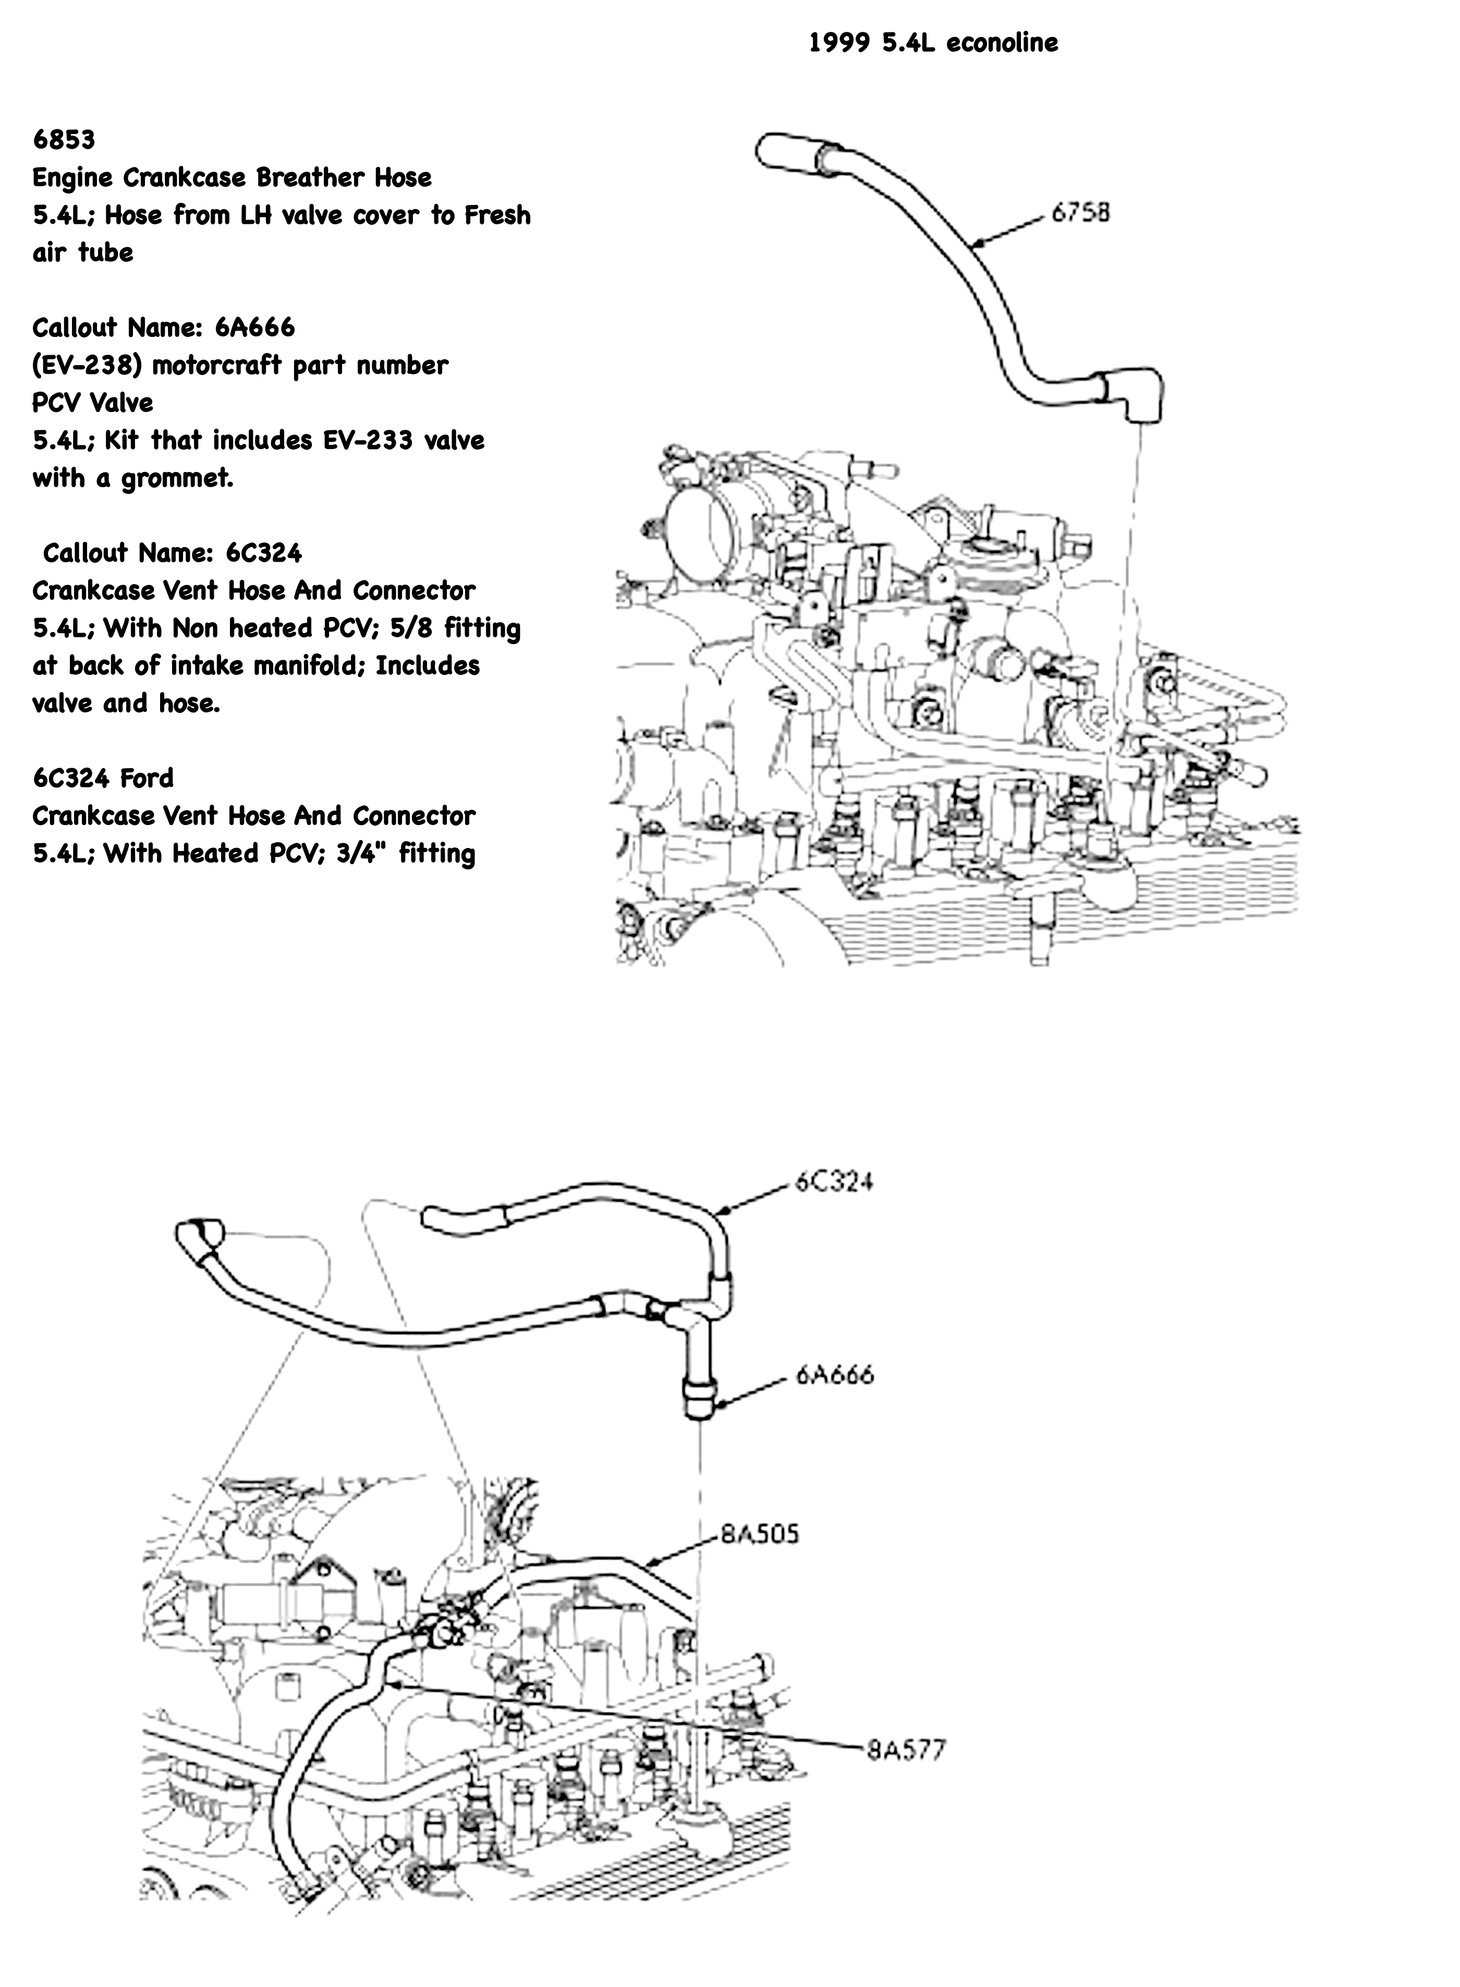 Ford F150 5 4 Engine Diagram ford F 150 5 4l Engine Diagram Of Ford F150 5 4 Engine Diagram